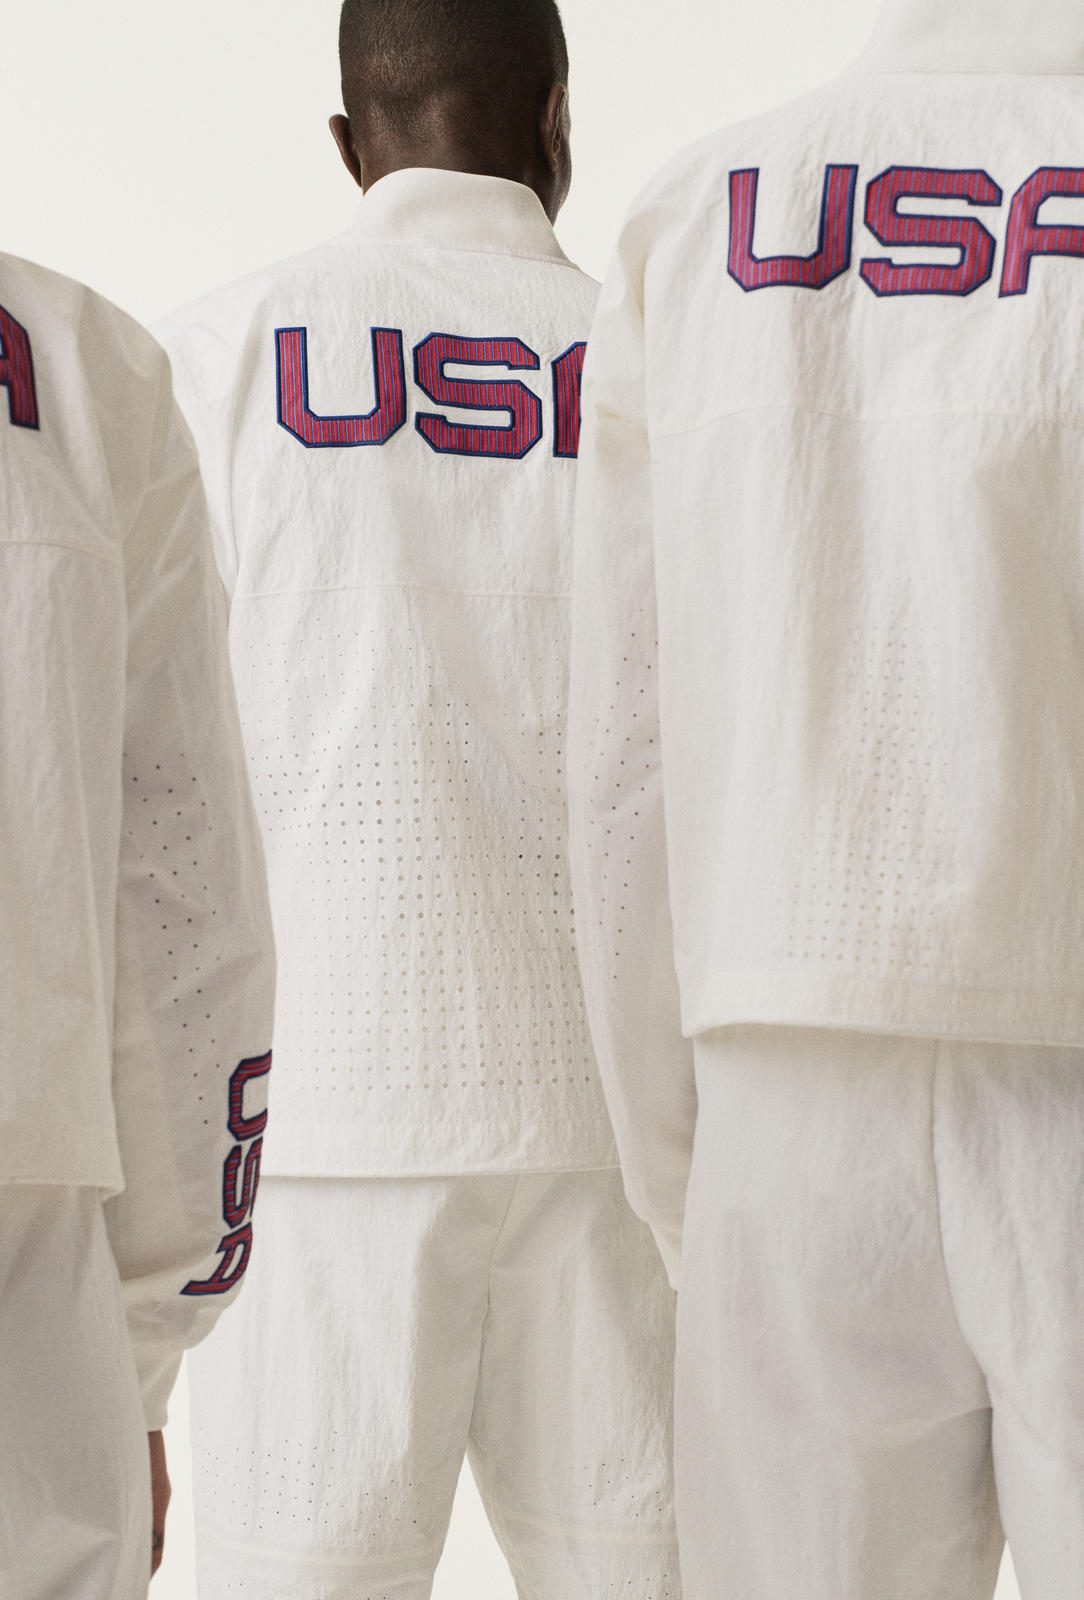 Nike представил форму для олимпийской сборной США, кроссовки из «космического мусора» и новые коллаборации (фото 3)